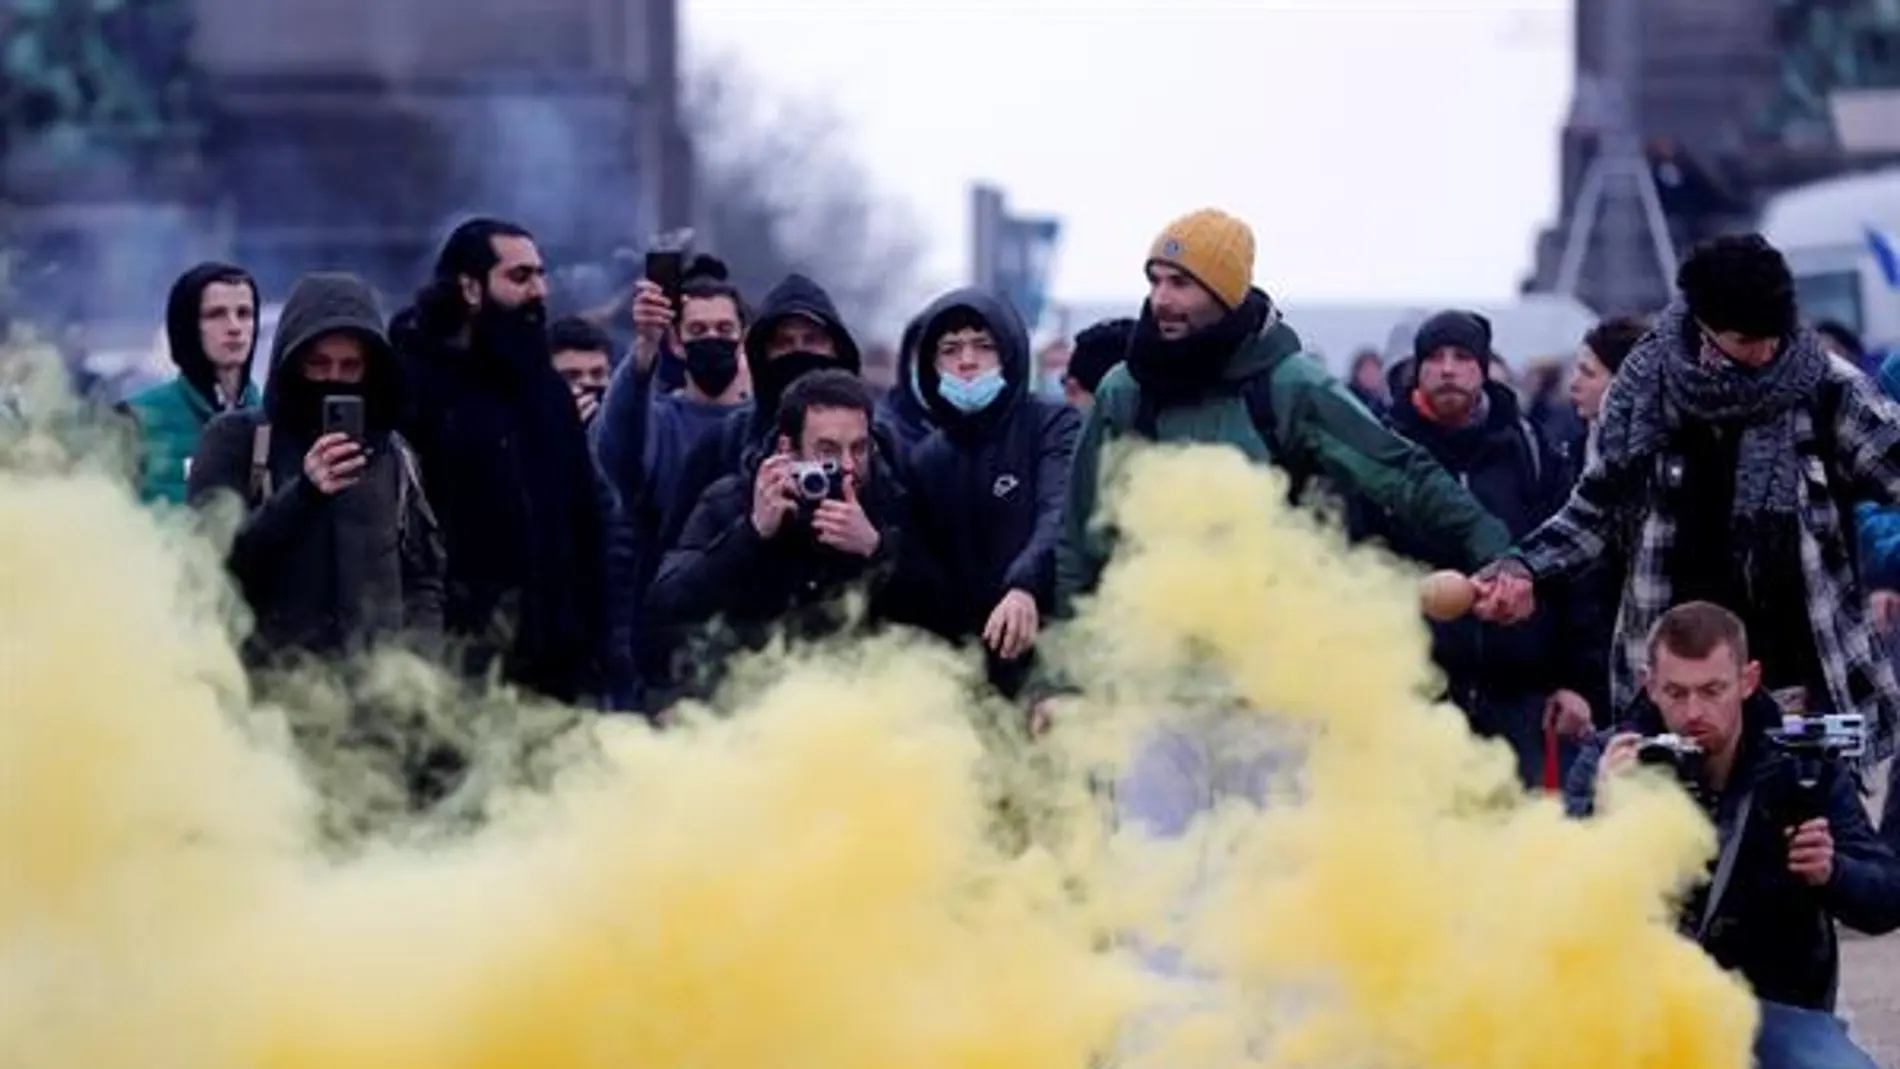 Imagen de la protesta en Bruselas contra las restricciones